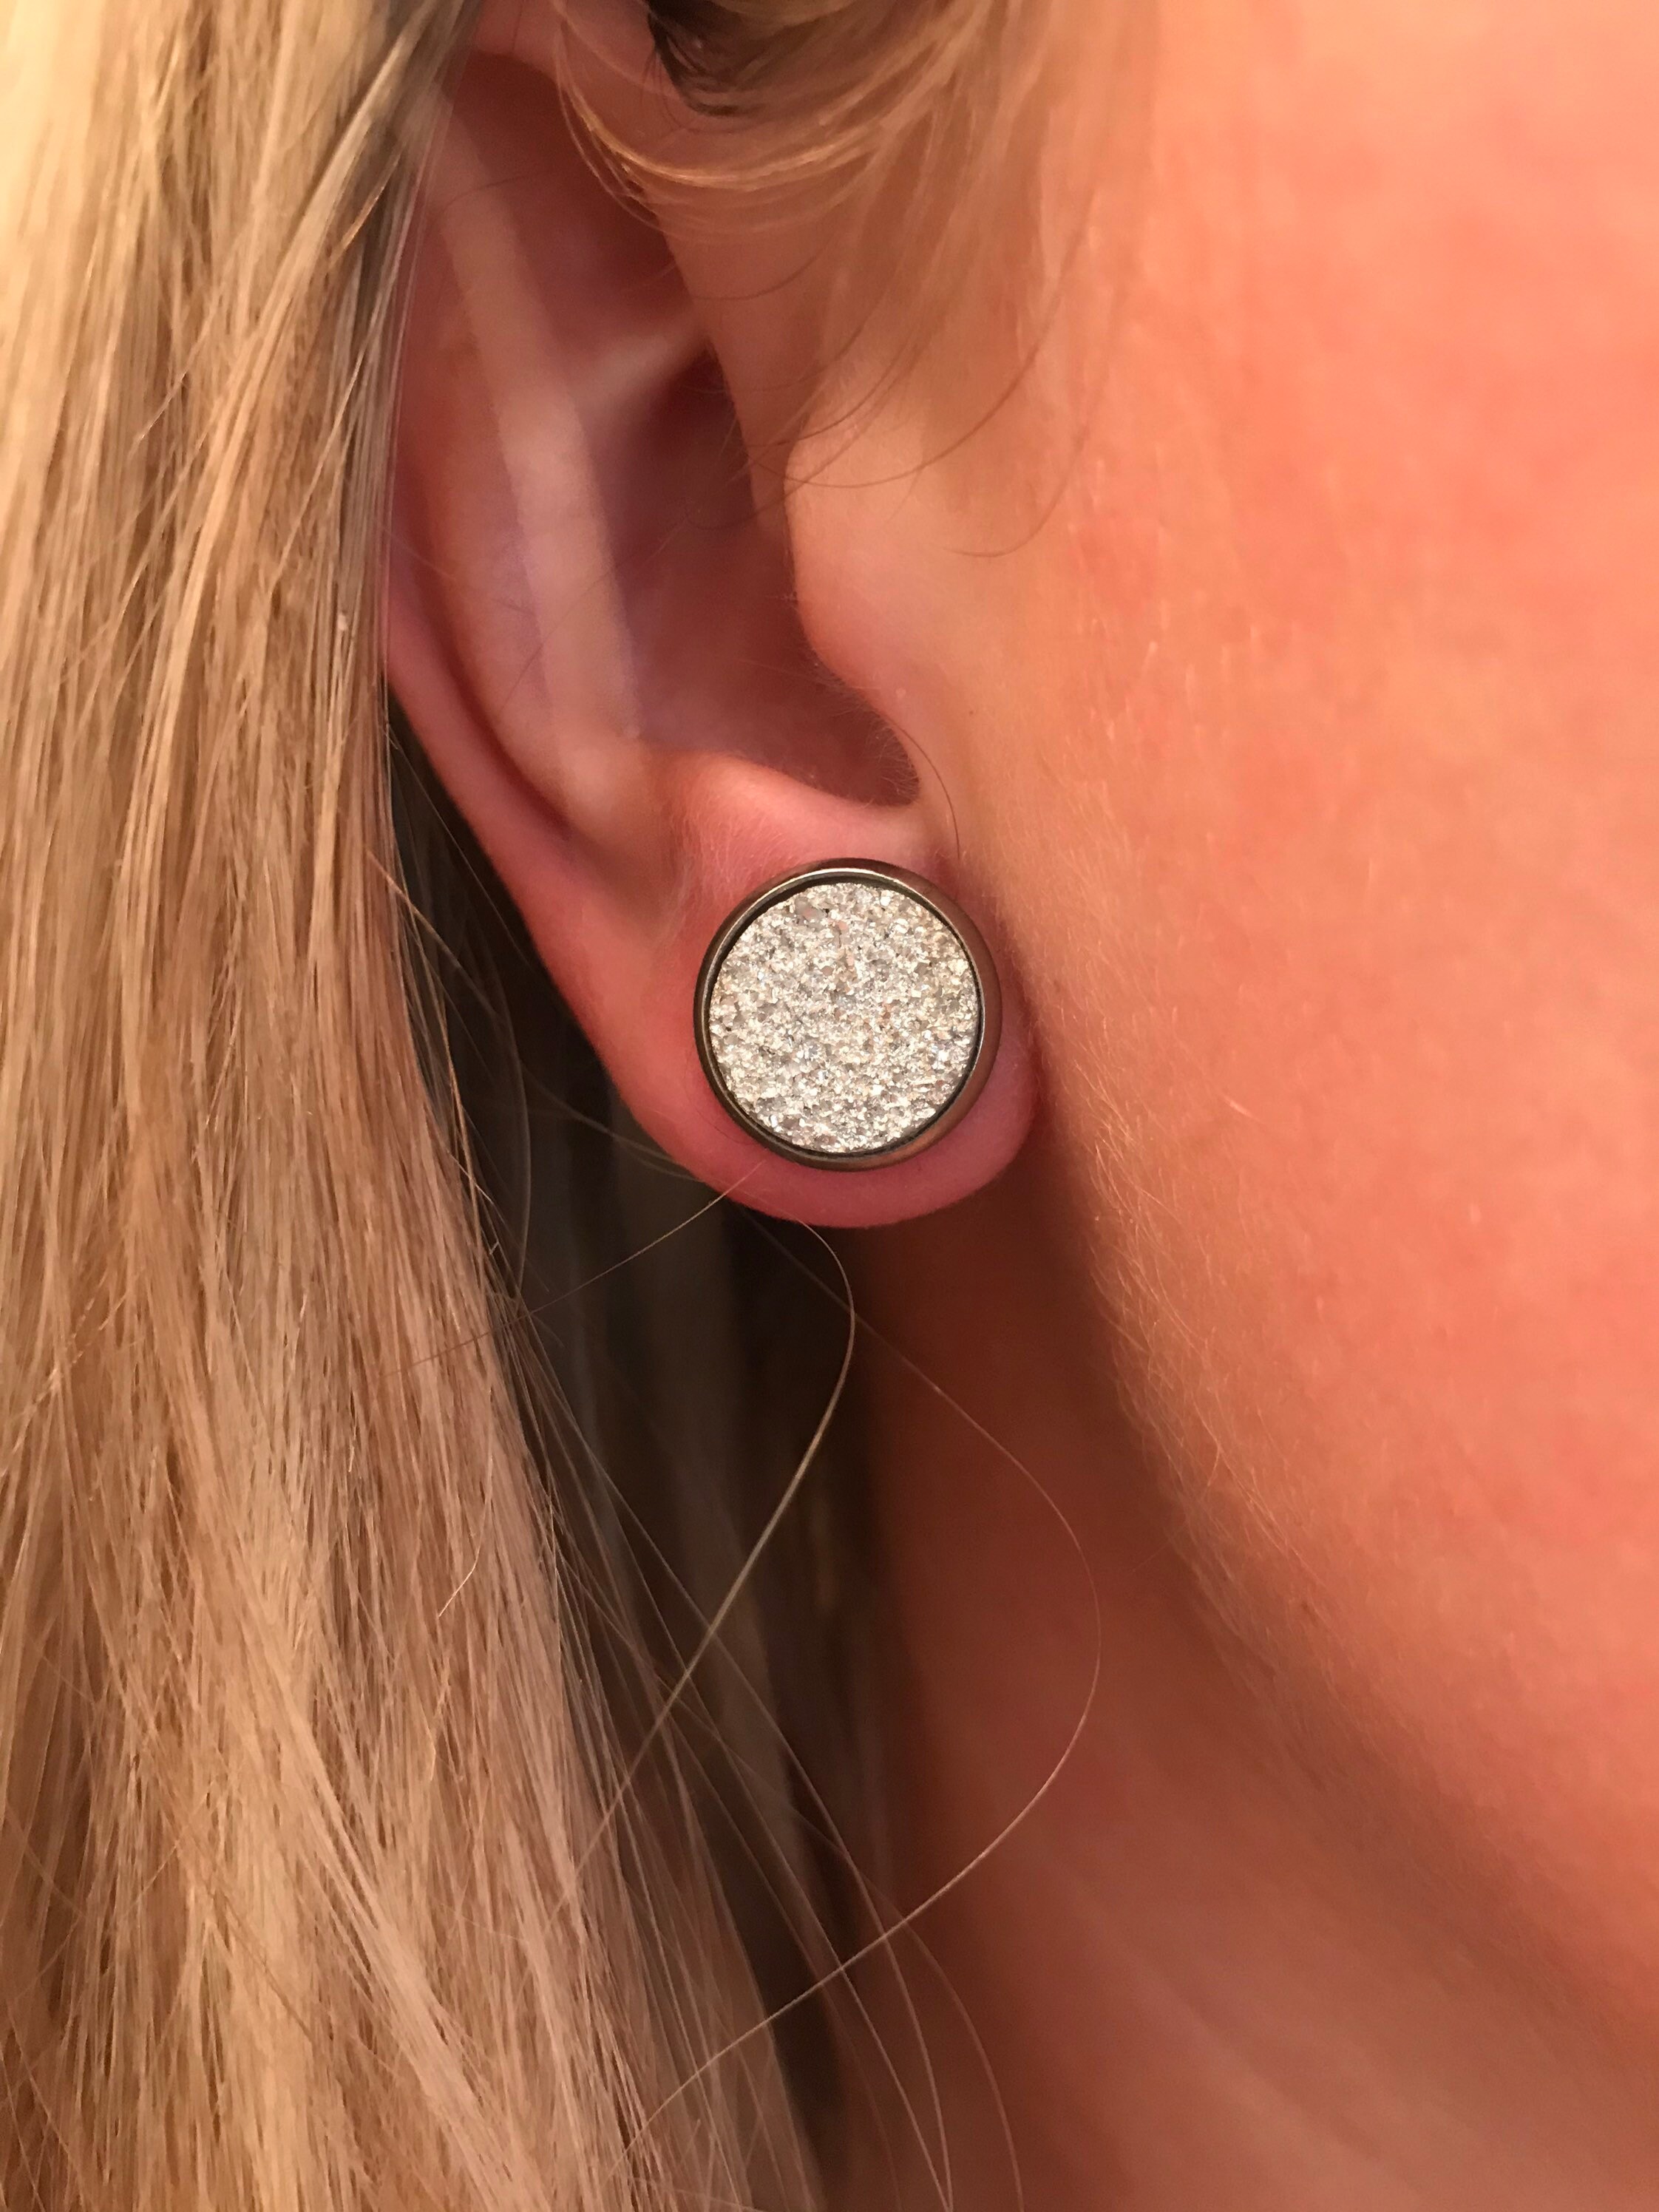 Faux Druzy Geode Stud Earrings Surgical Steel Earrings for Sensitive Skin  Rose Gold Druzy Silver Druzy Earrings 12mm 